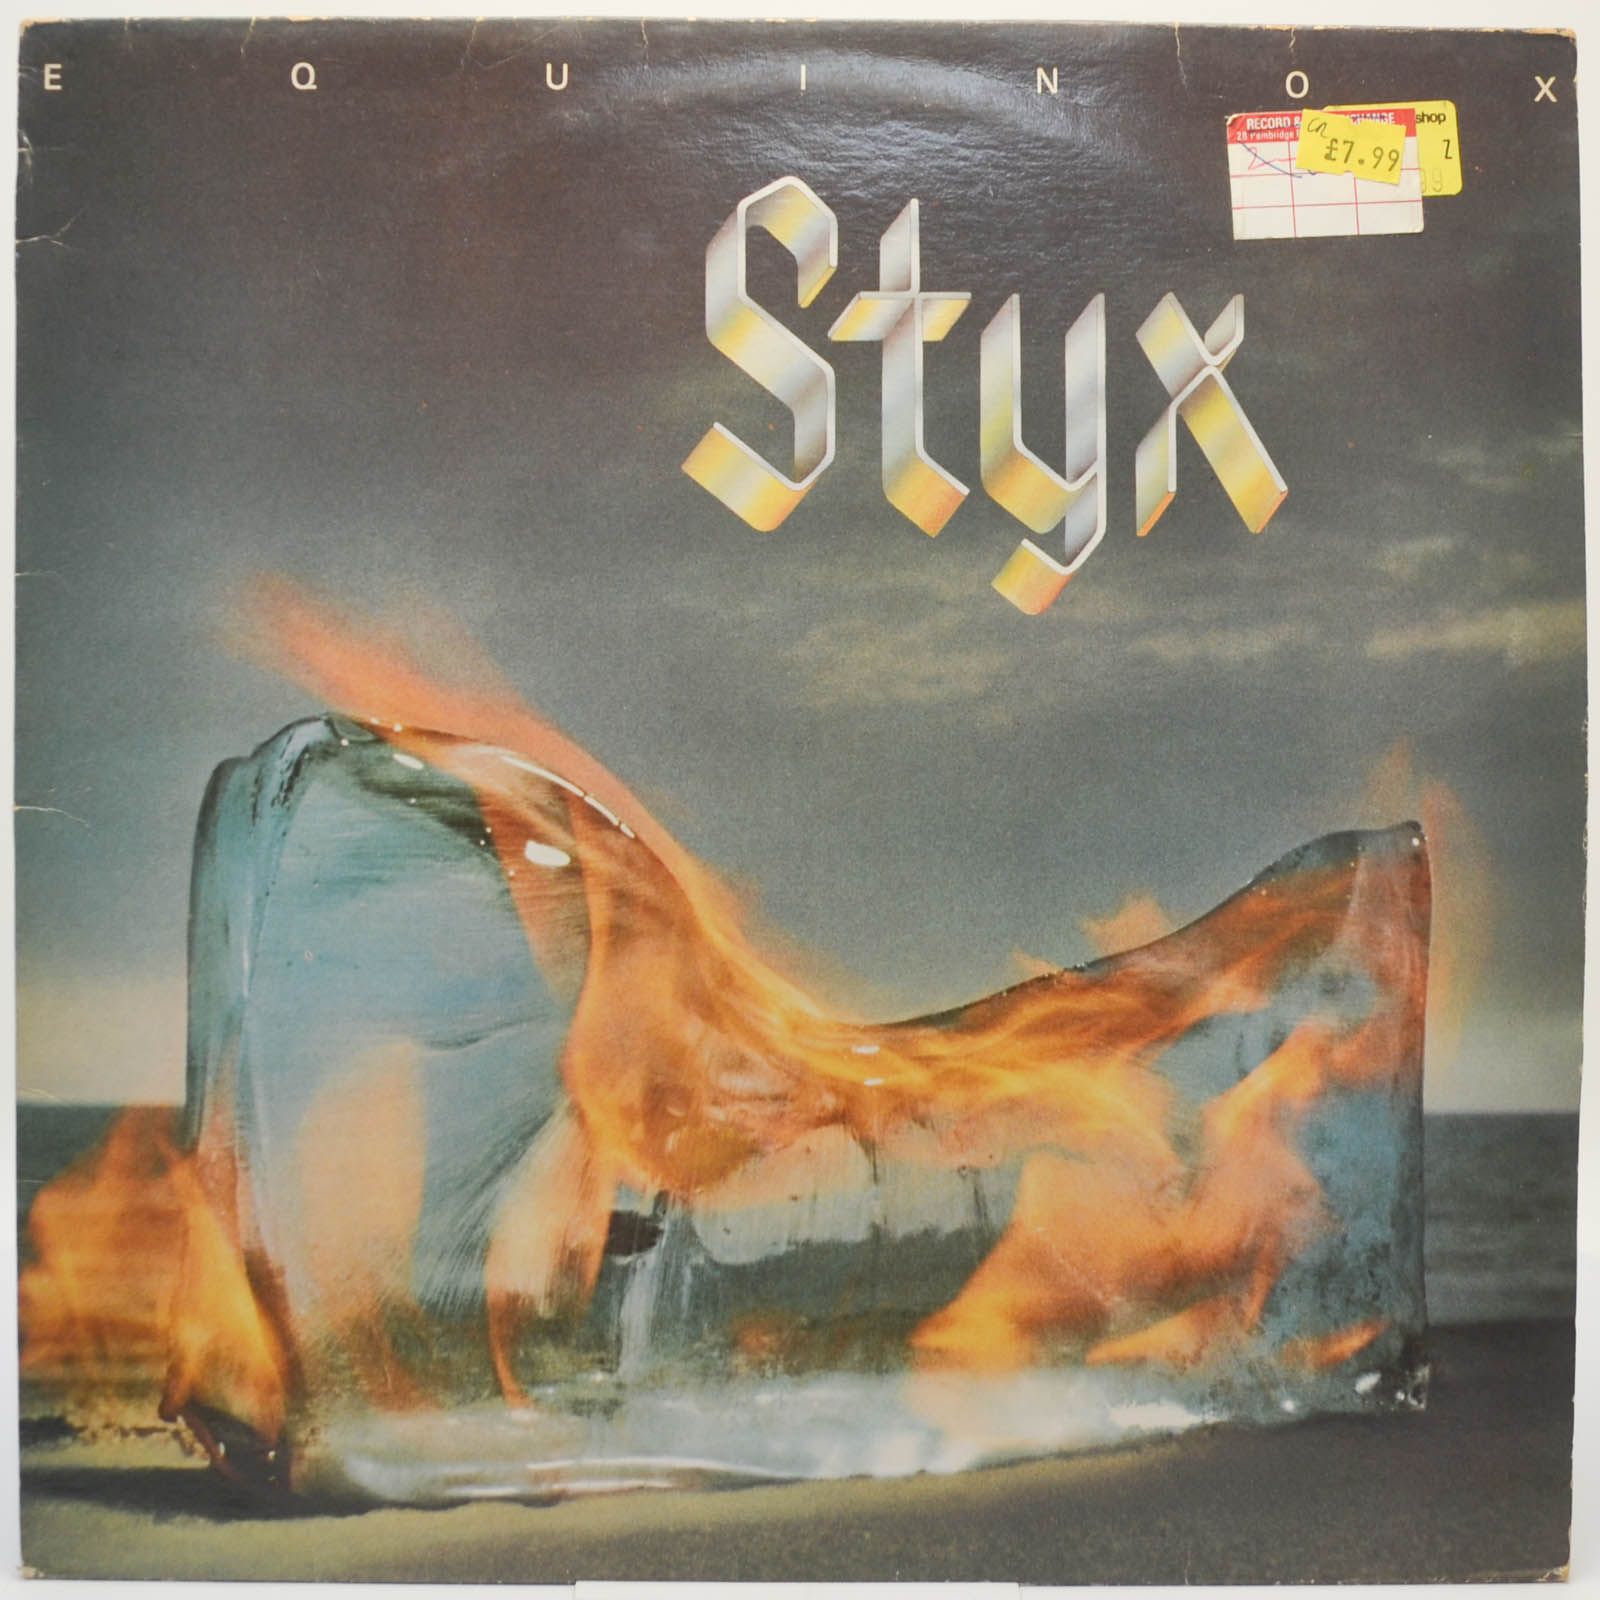 Styx — Equinox (UK), 1975